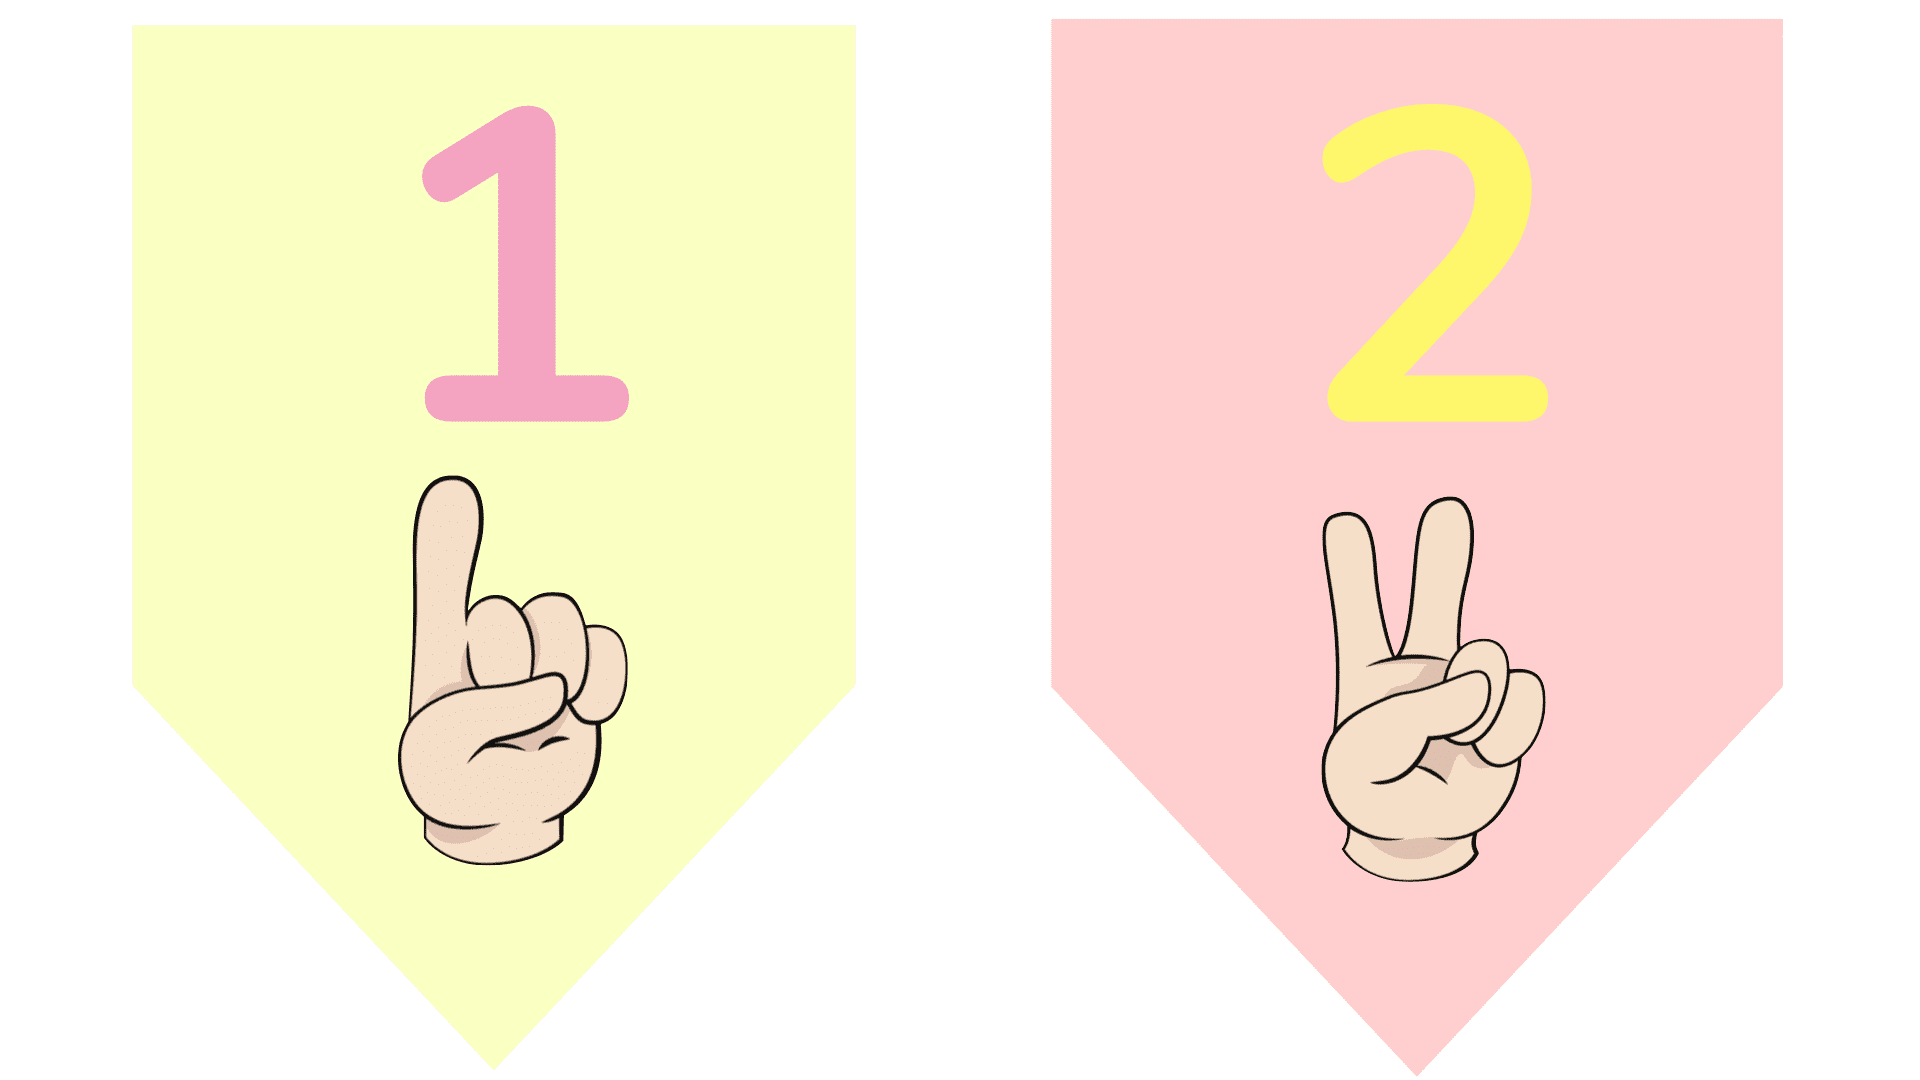 Banderines númeración del 1 al 10